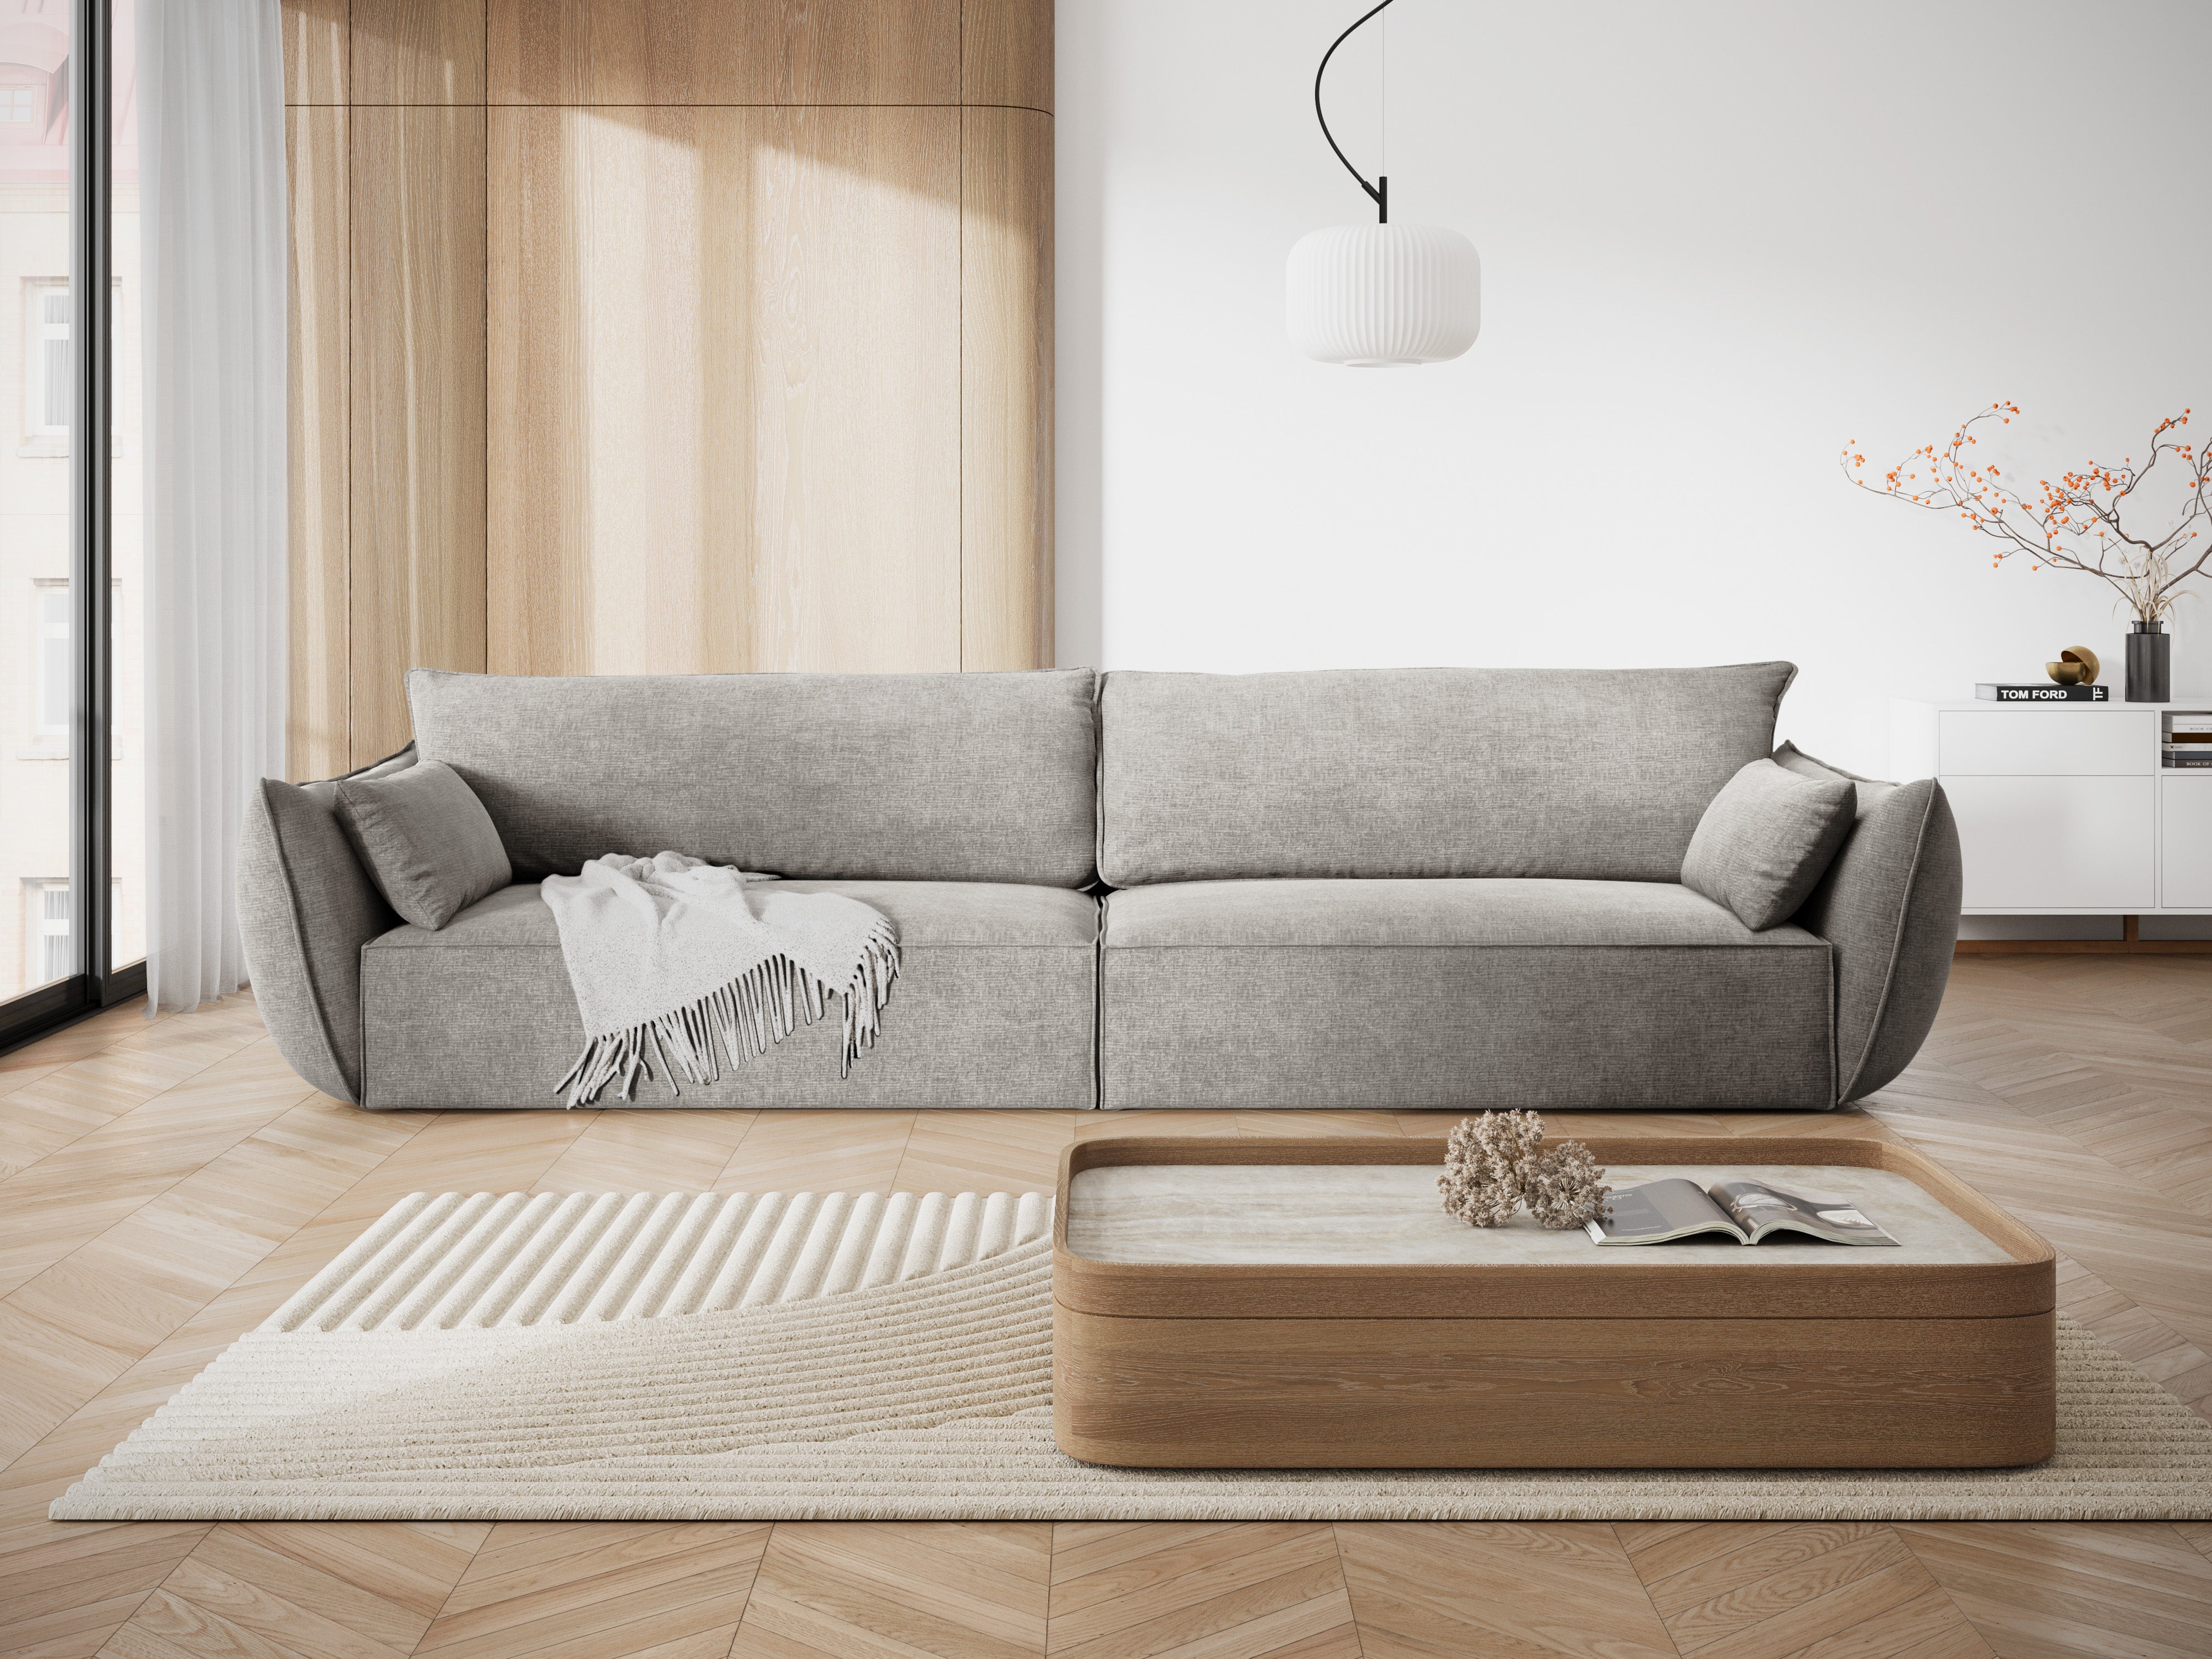 Sofa w tkaninie szenilowej 4-osobowa VANDA jasnoszary Mazzini Sofas    Eye on Design